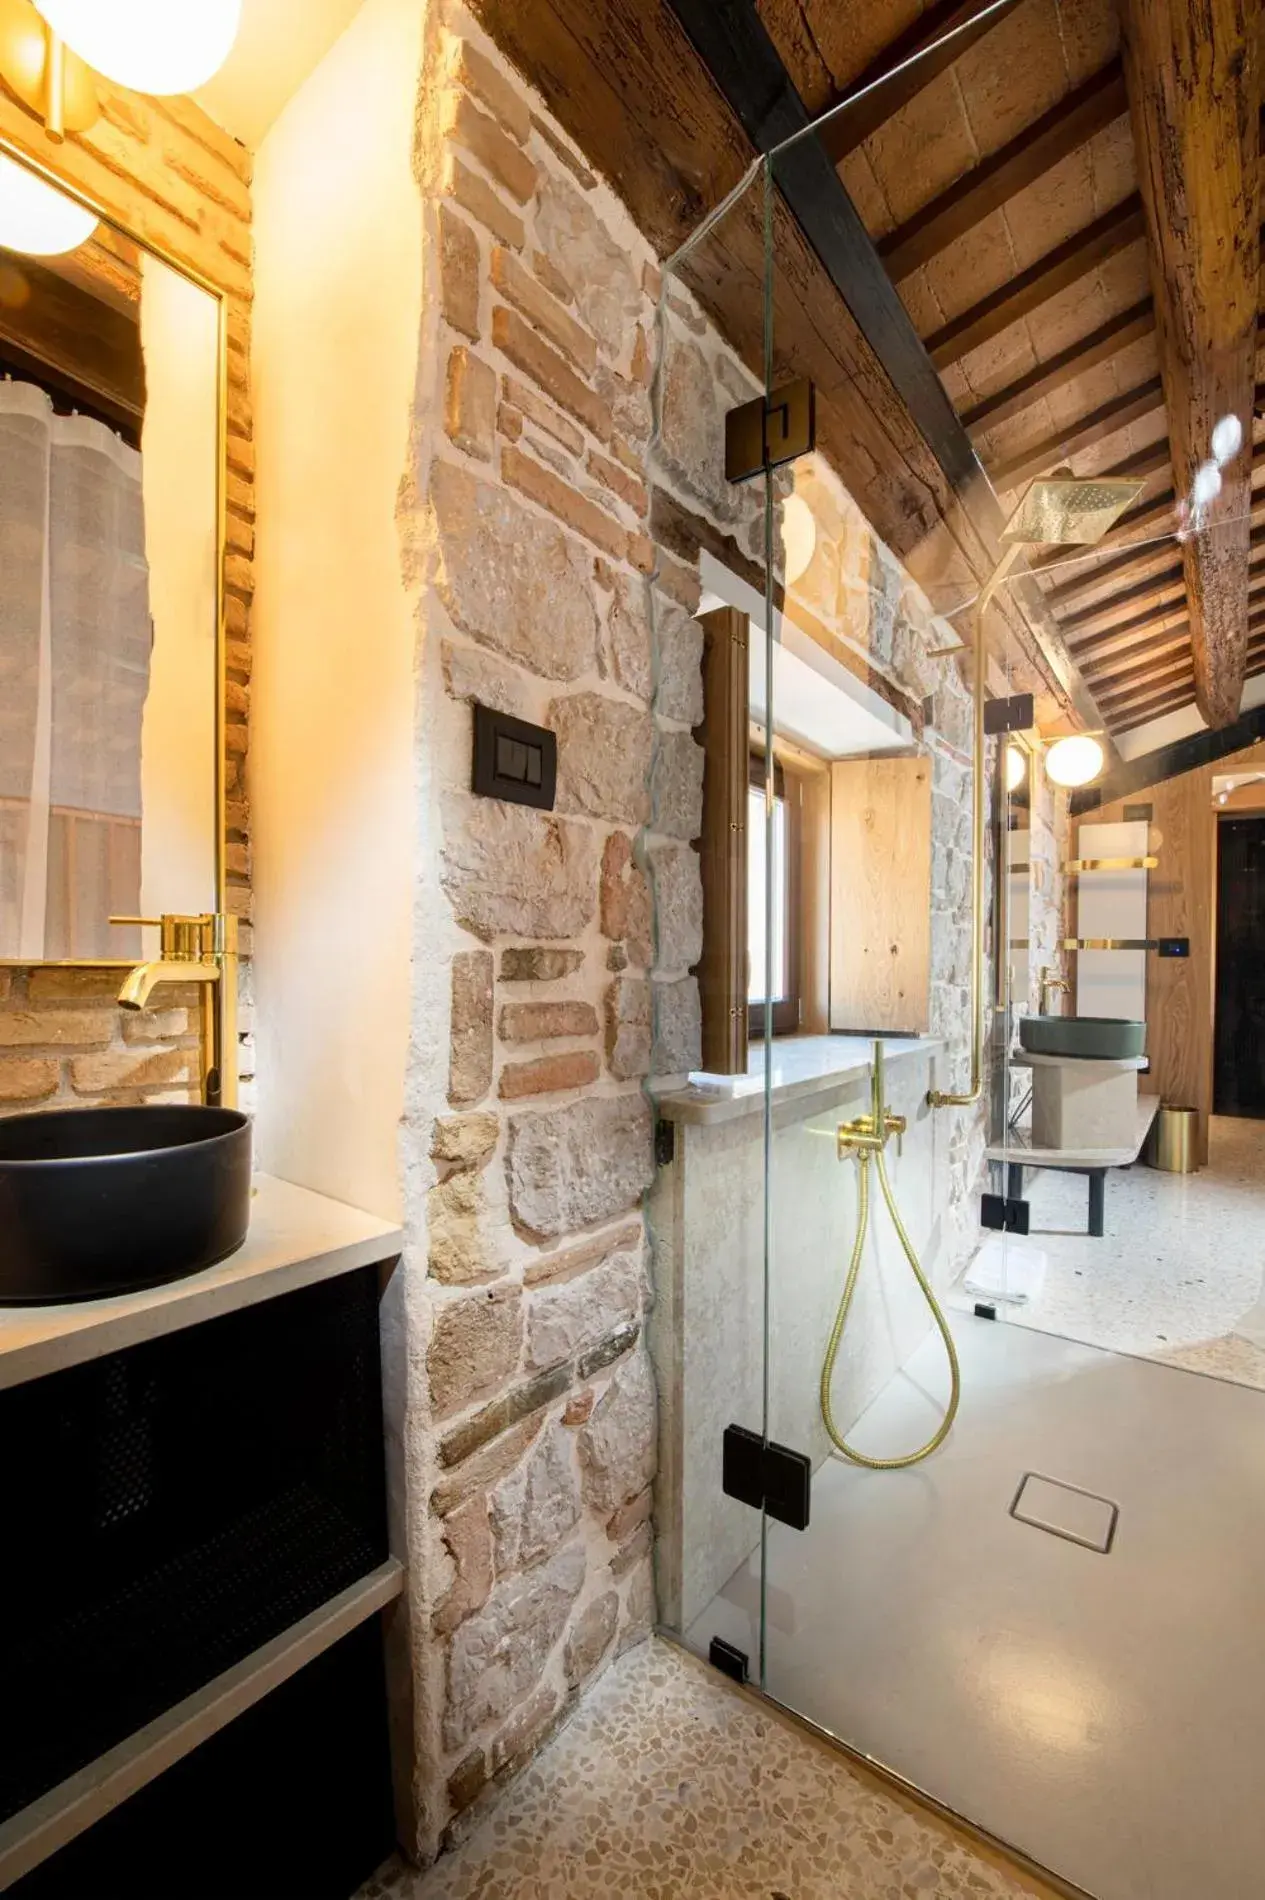 Shower, Bathroom in Spirito Santo Palazzo Storico